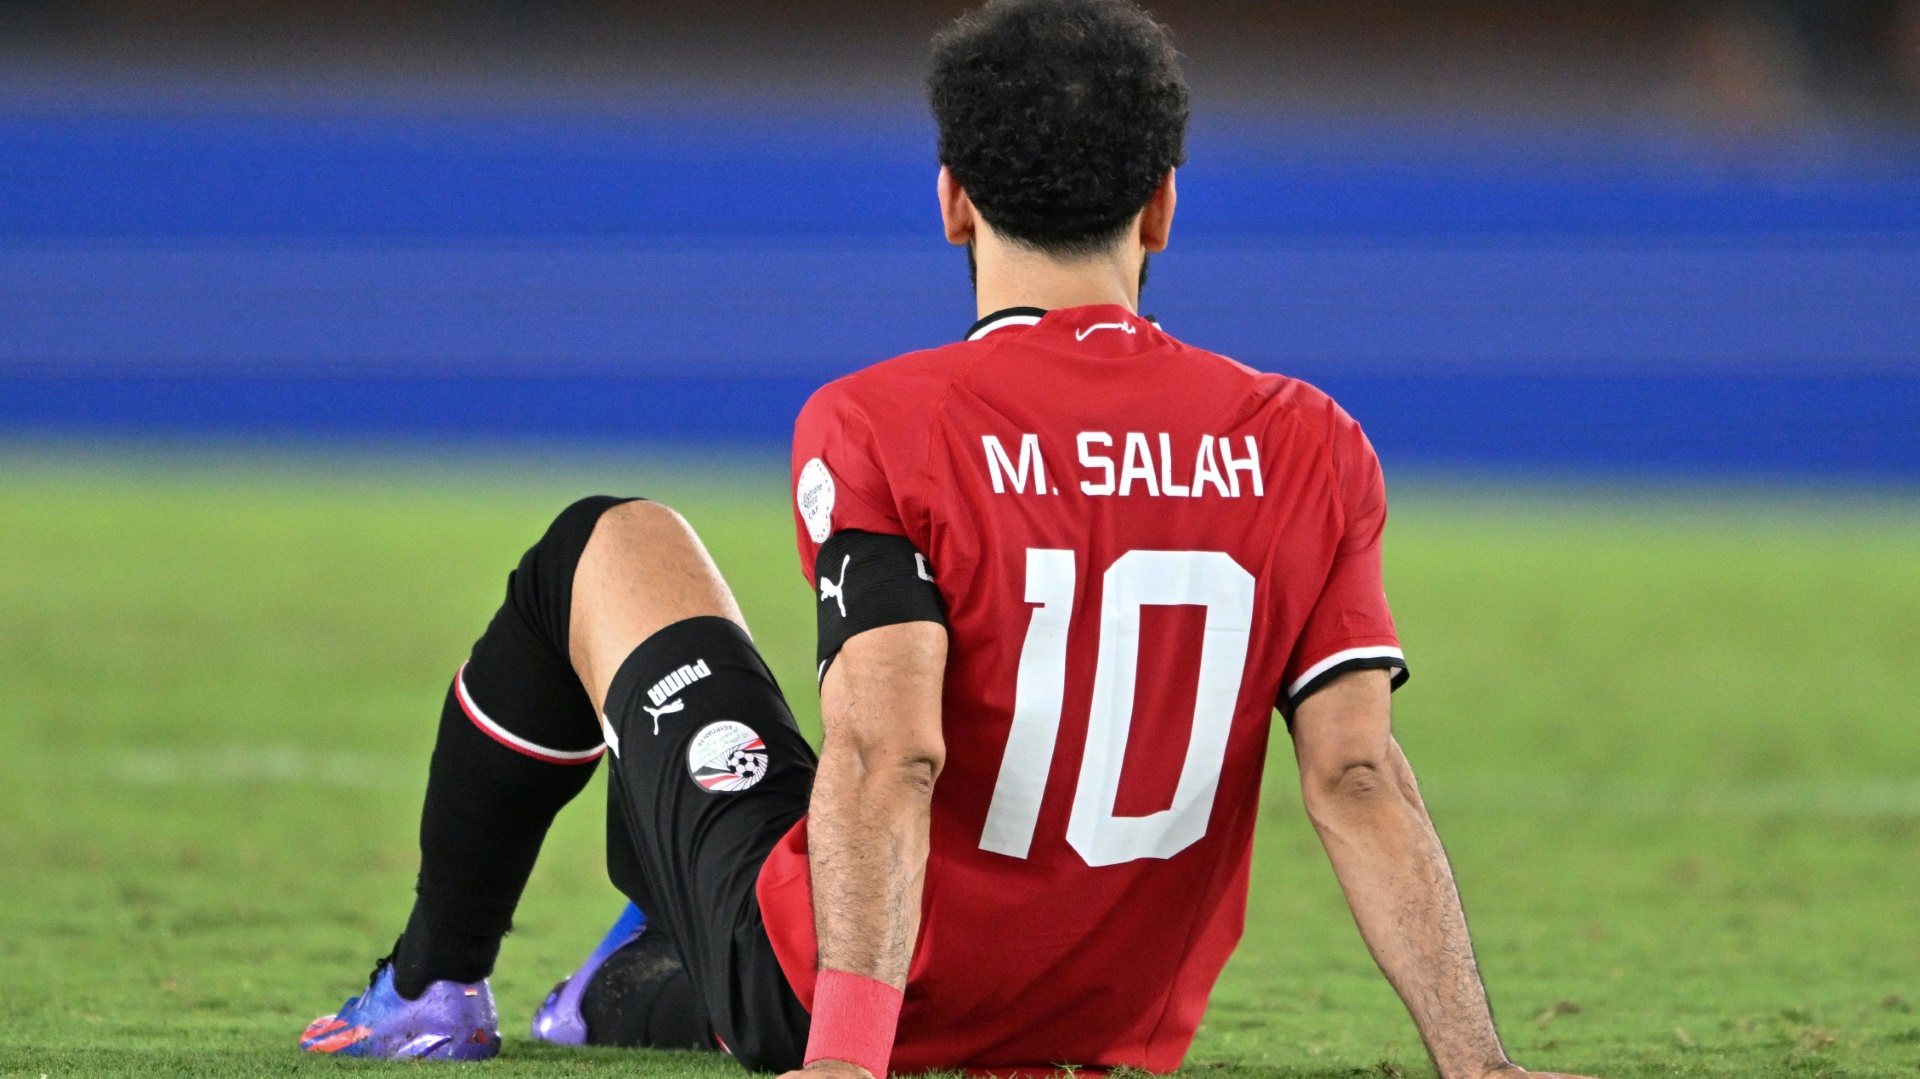 Musste verletzt raus: Mohamed Salah